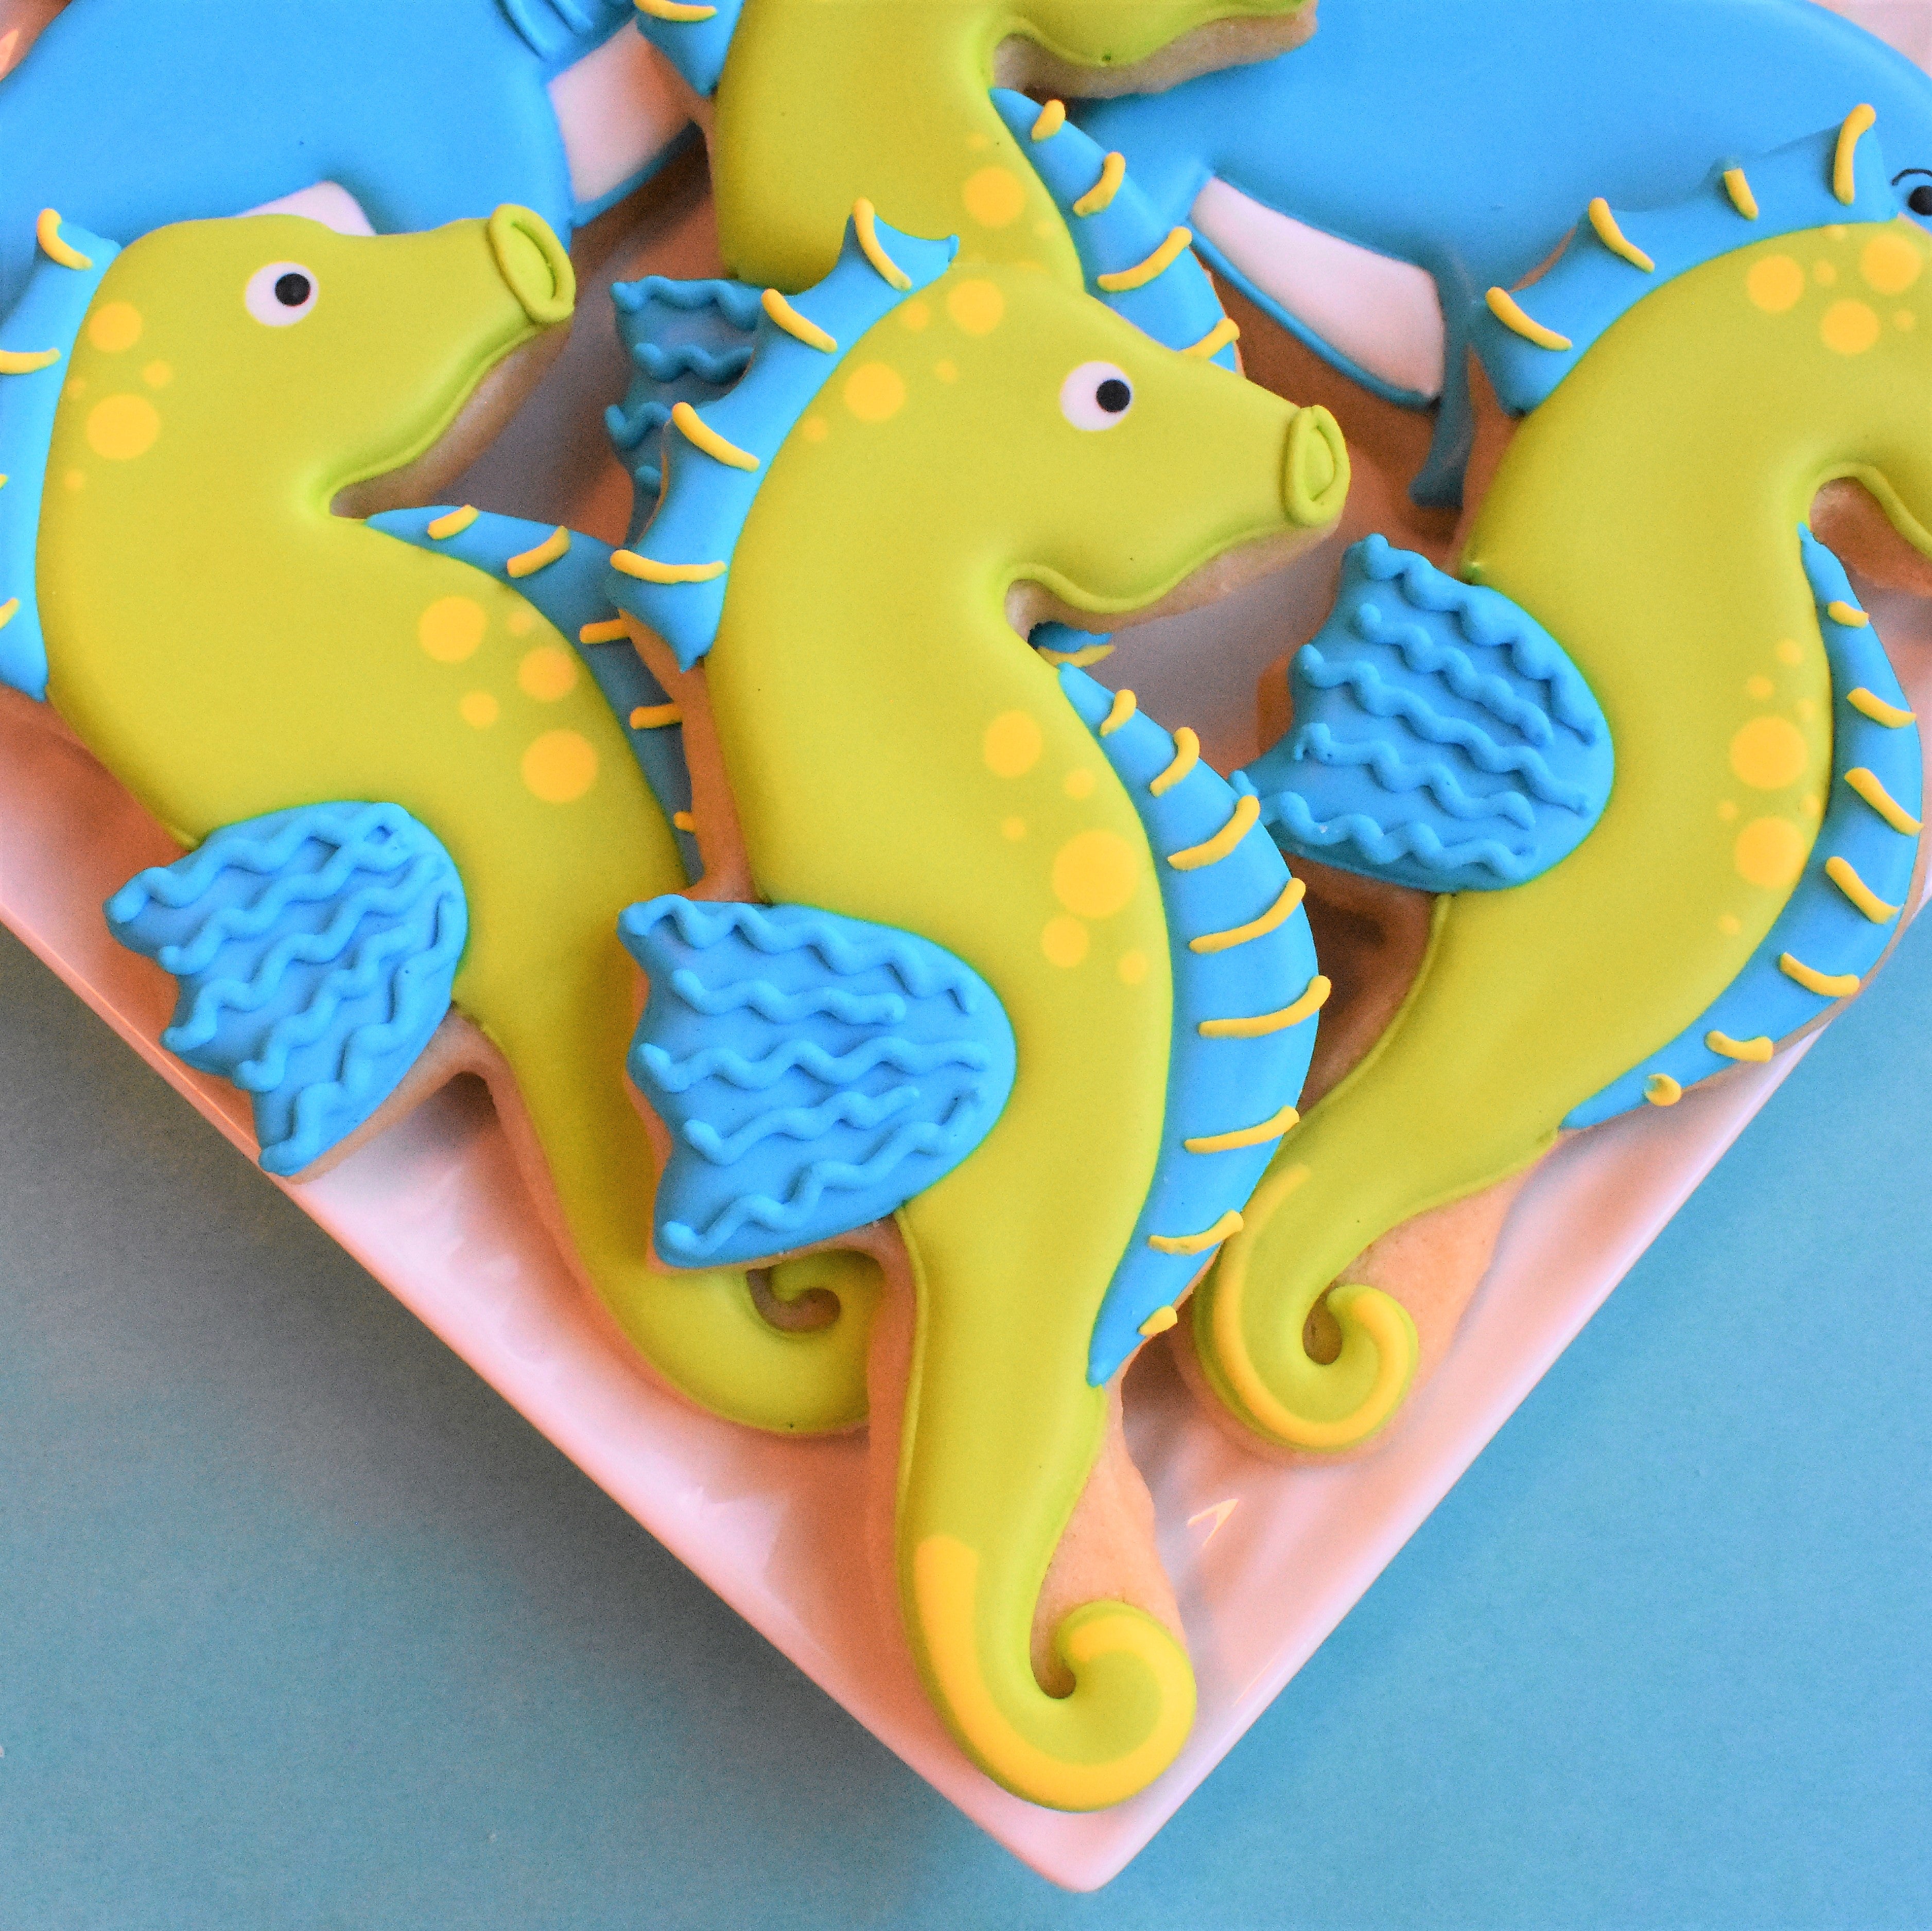 Seahorse Cookie Cutter – The Flour Box